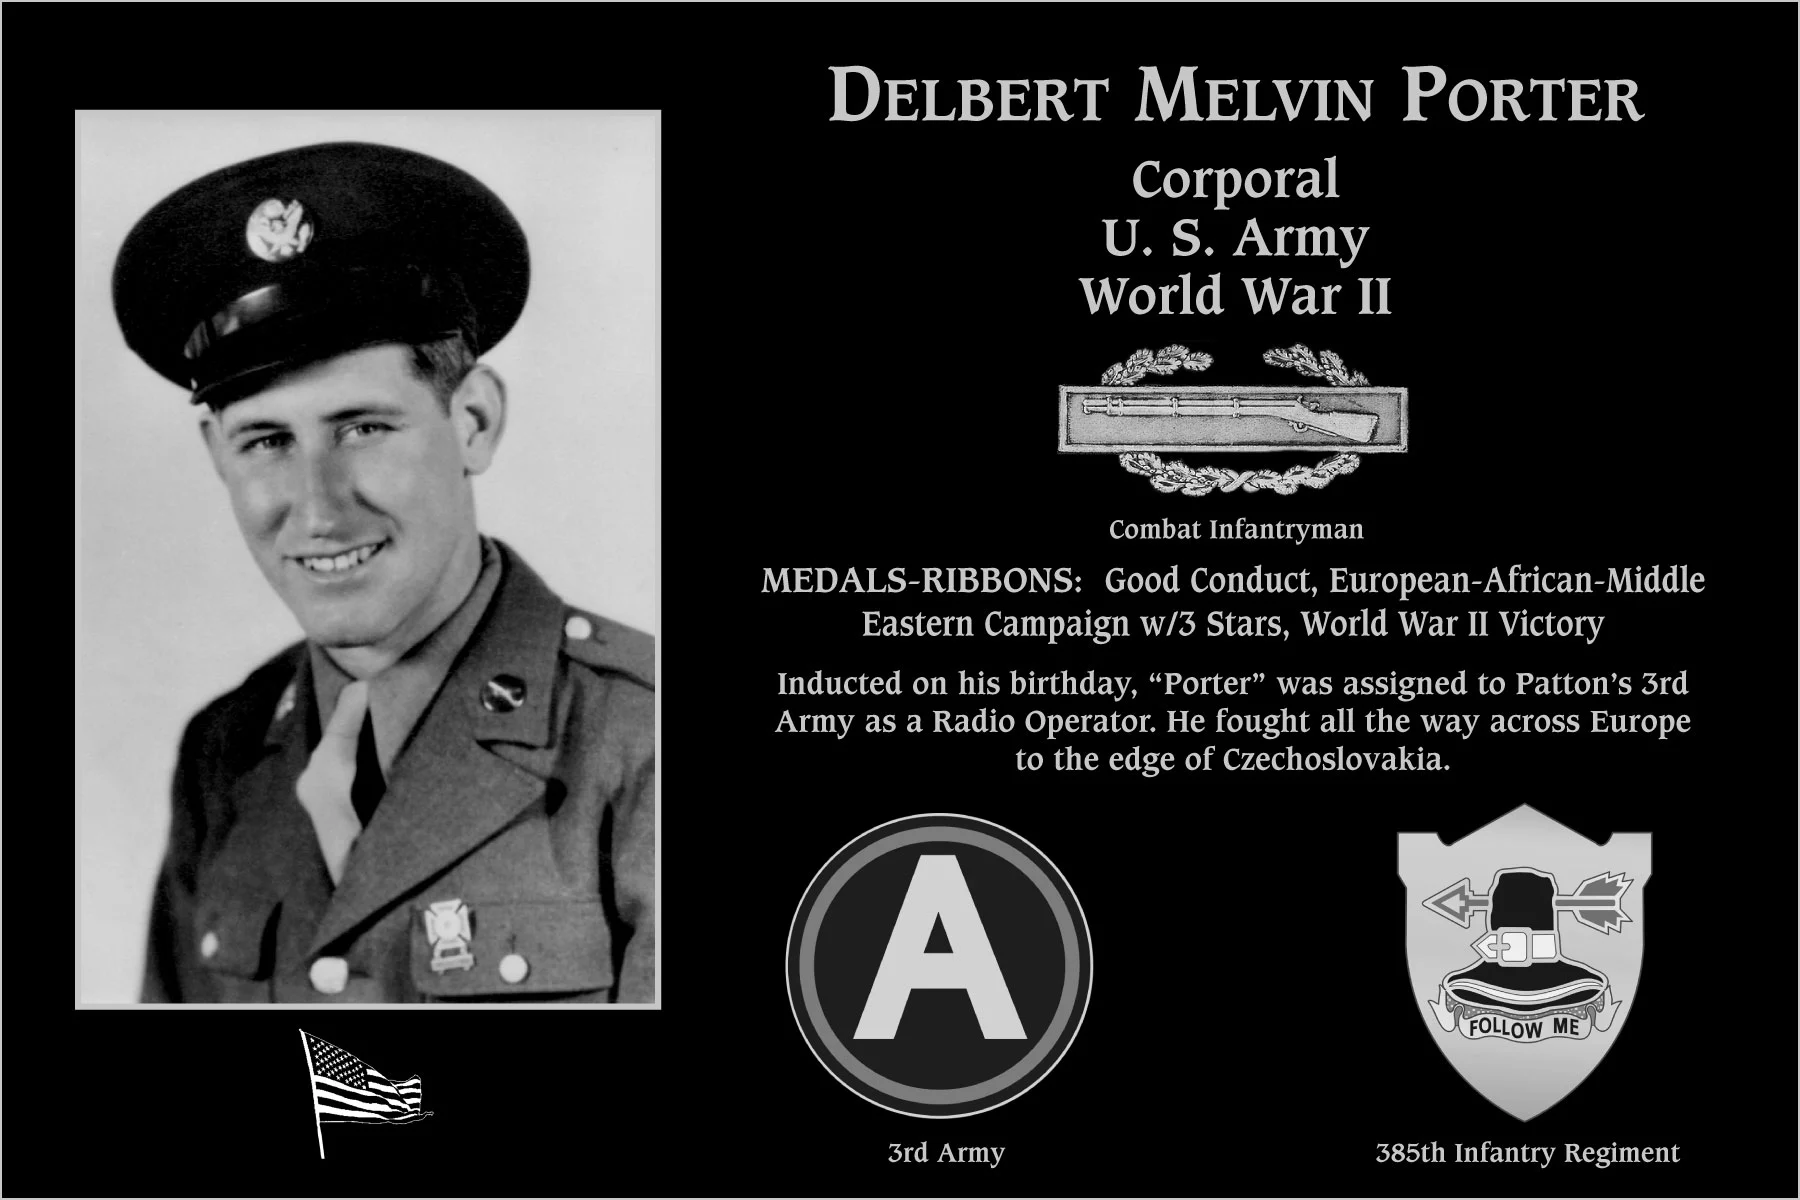 Delbert Melvin Porter